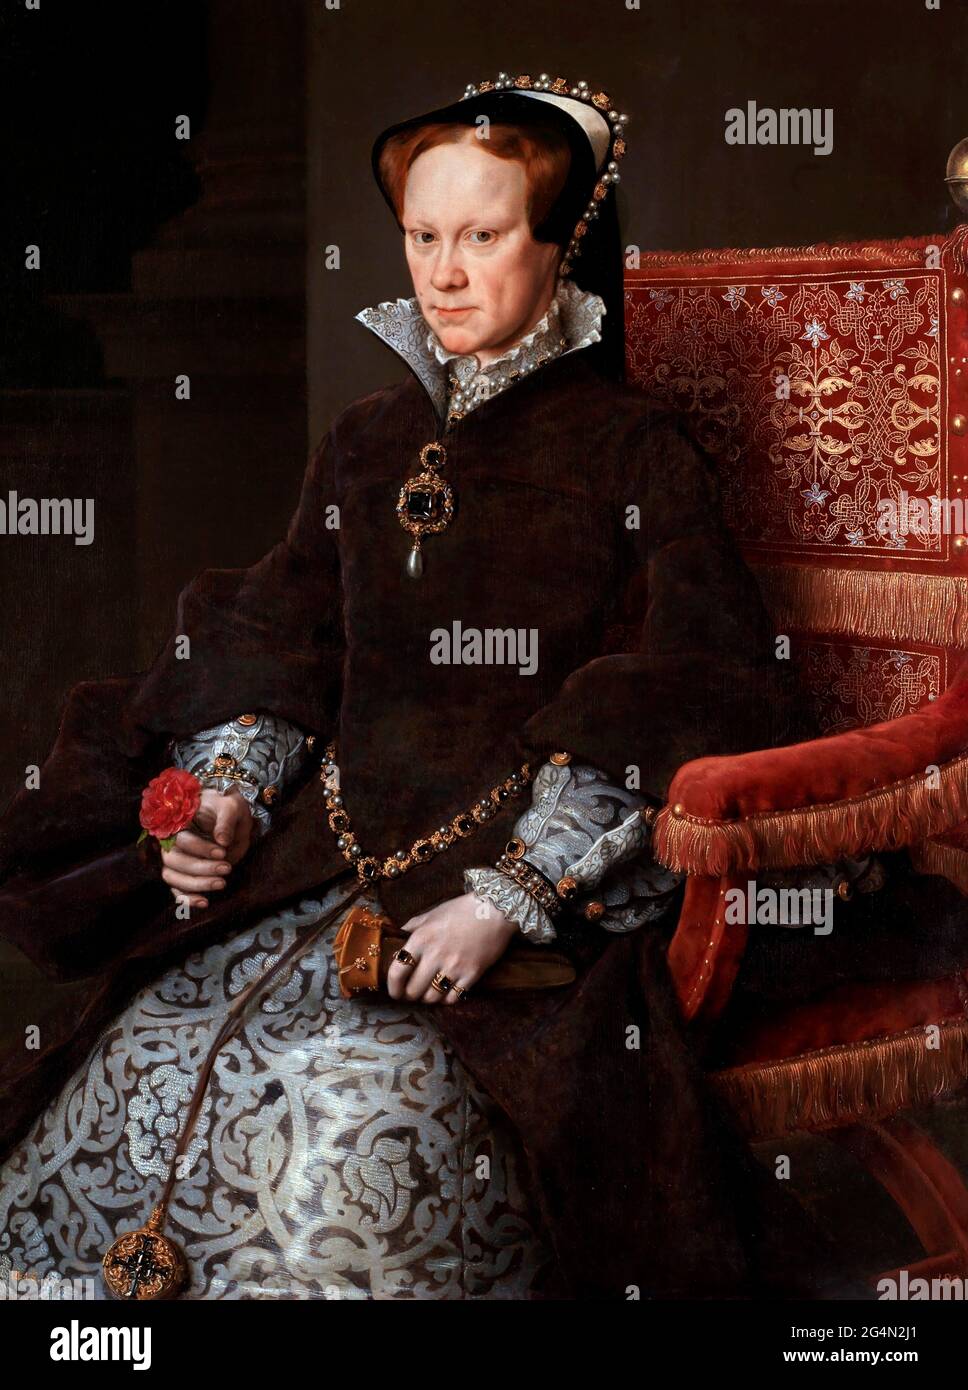 La reine Mary I. Mary Tudor, reine d'Angleterre par Anthonis Mor, huile à panneaux, 1554 Banque D'Images